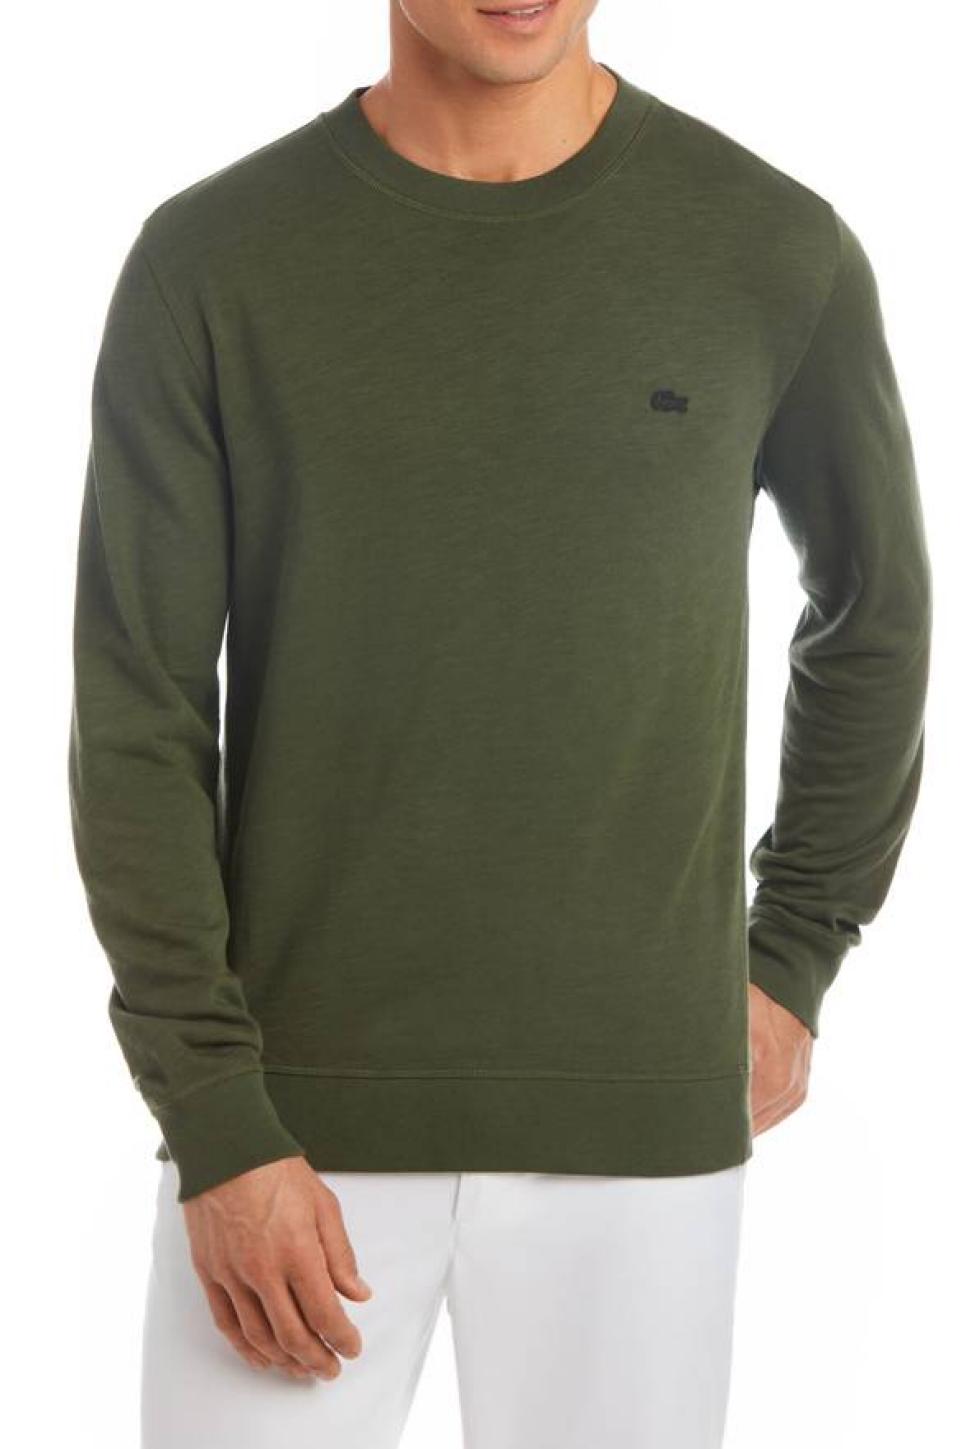 Lacoste Green Sweatshirt.jpg